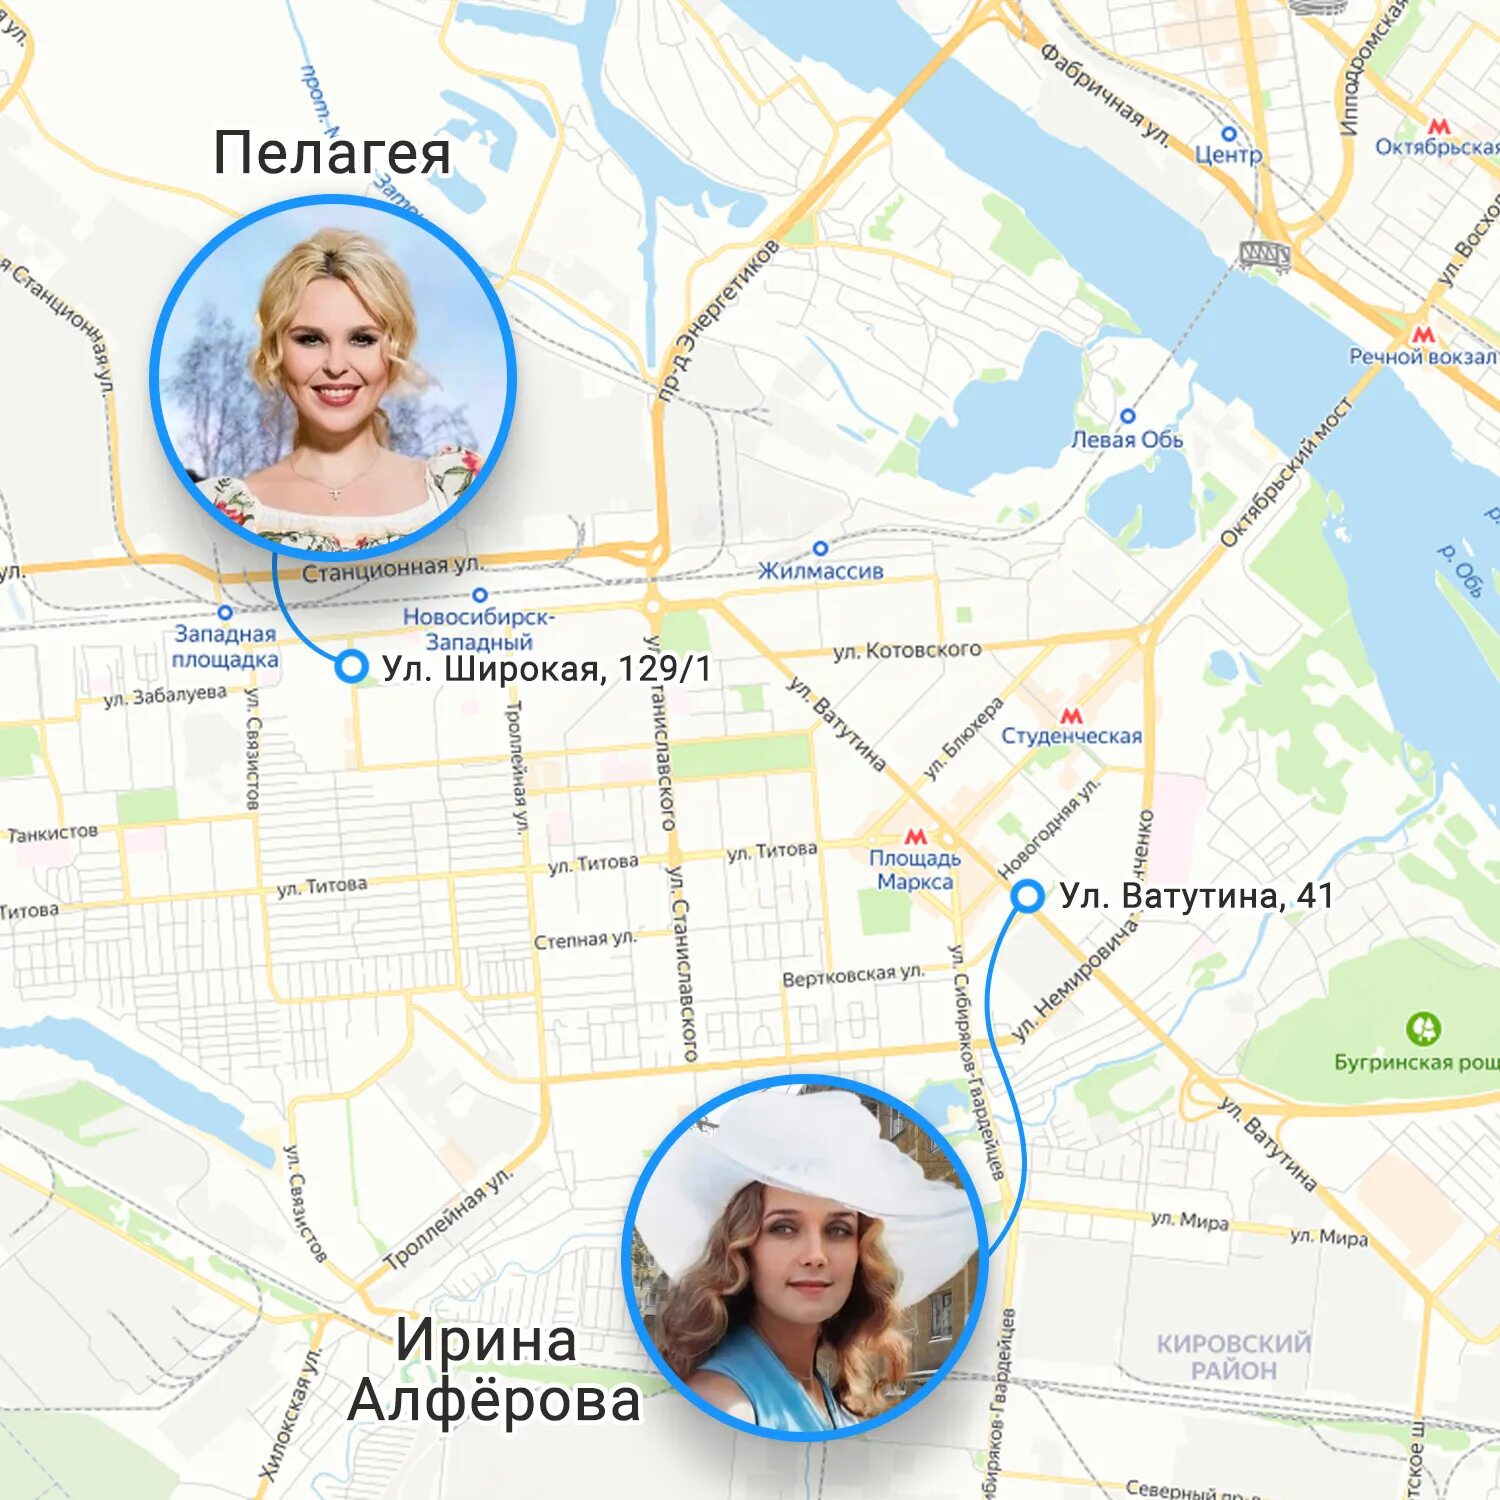 Какими товарами известен новосибирск. Знаменитости Новосибирска. Какие знаменитости живут в Новосибирске. Где живут звезды в Москве карта. Известные люди жившие в Новосибирске.